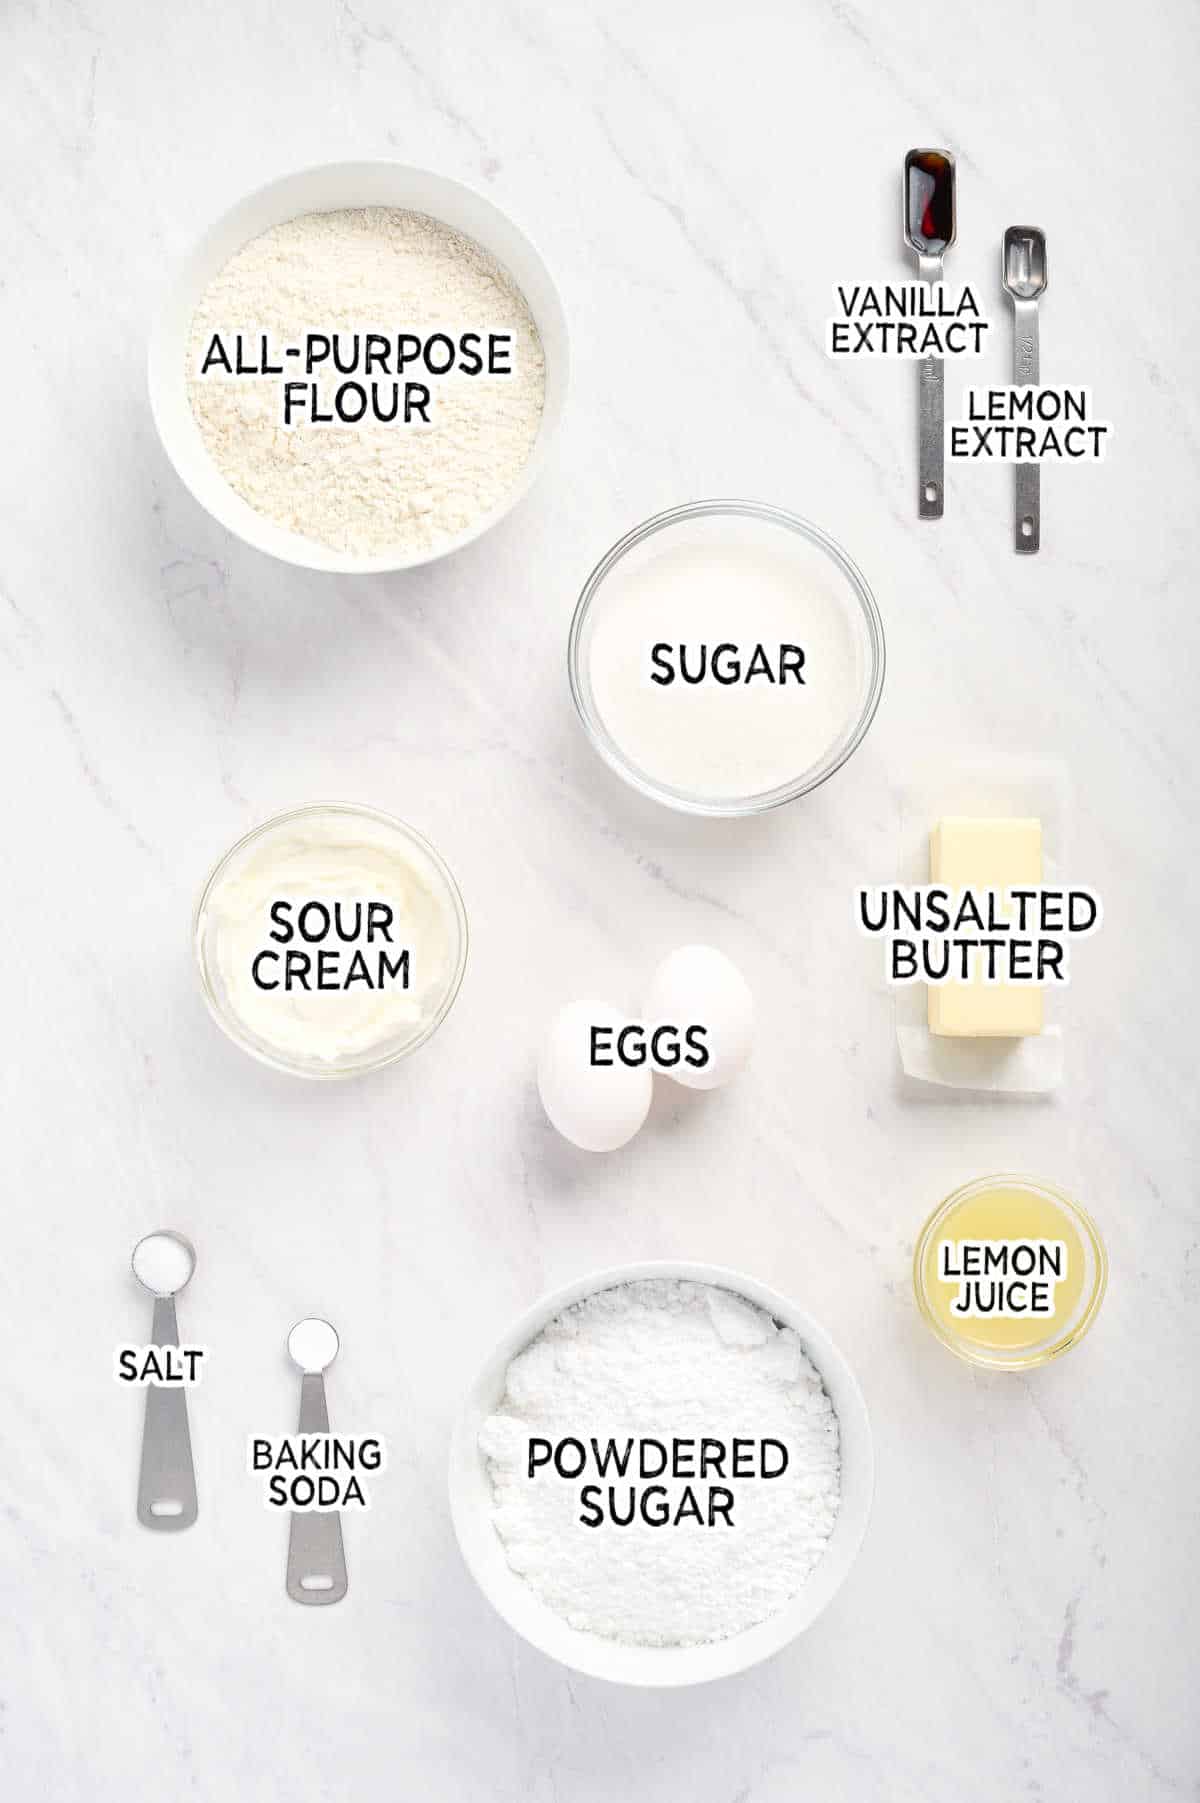 Ingredients to make lemon pound cake muffins.